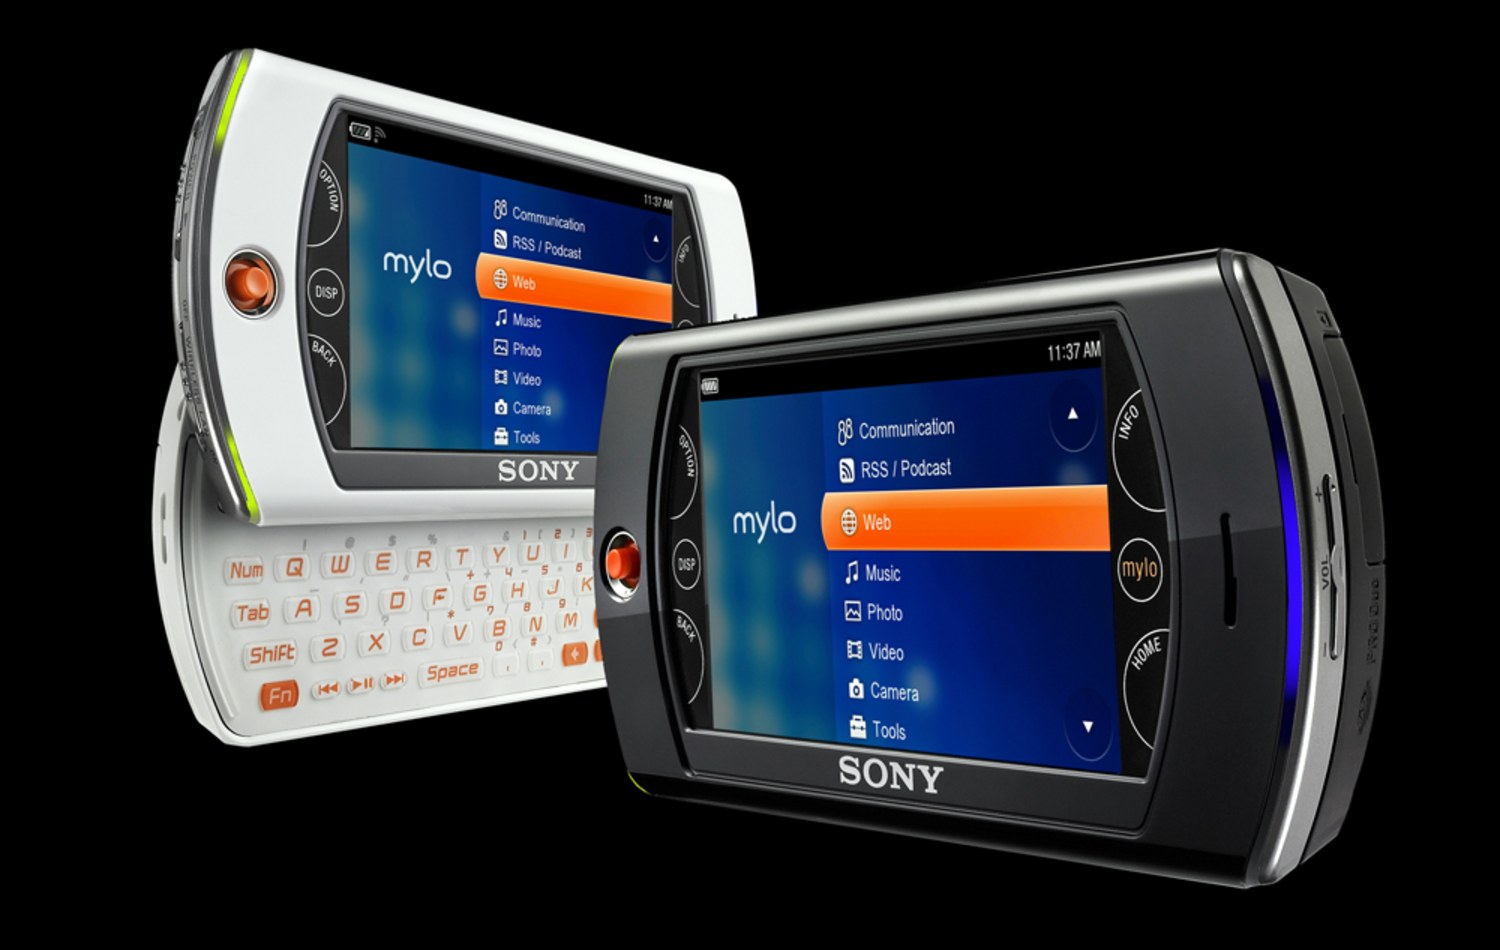 Sony's Mylo messaging gadget gets update